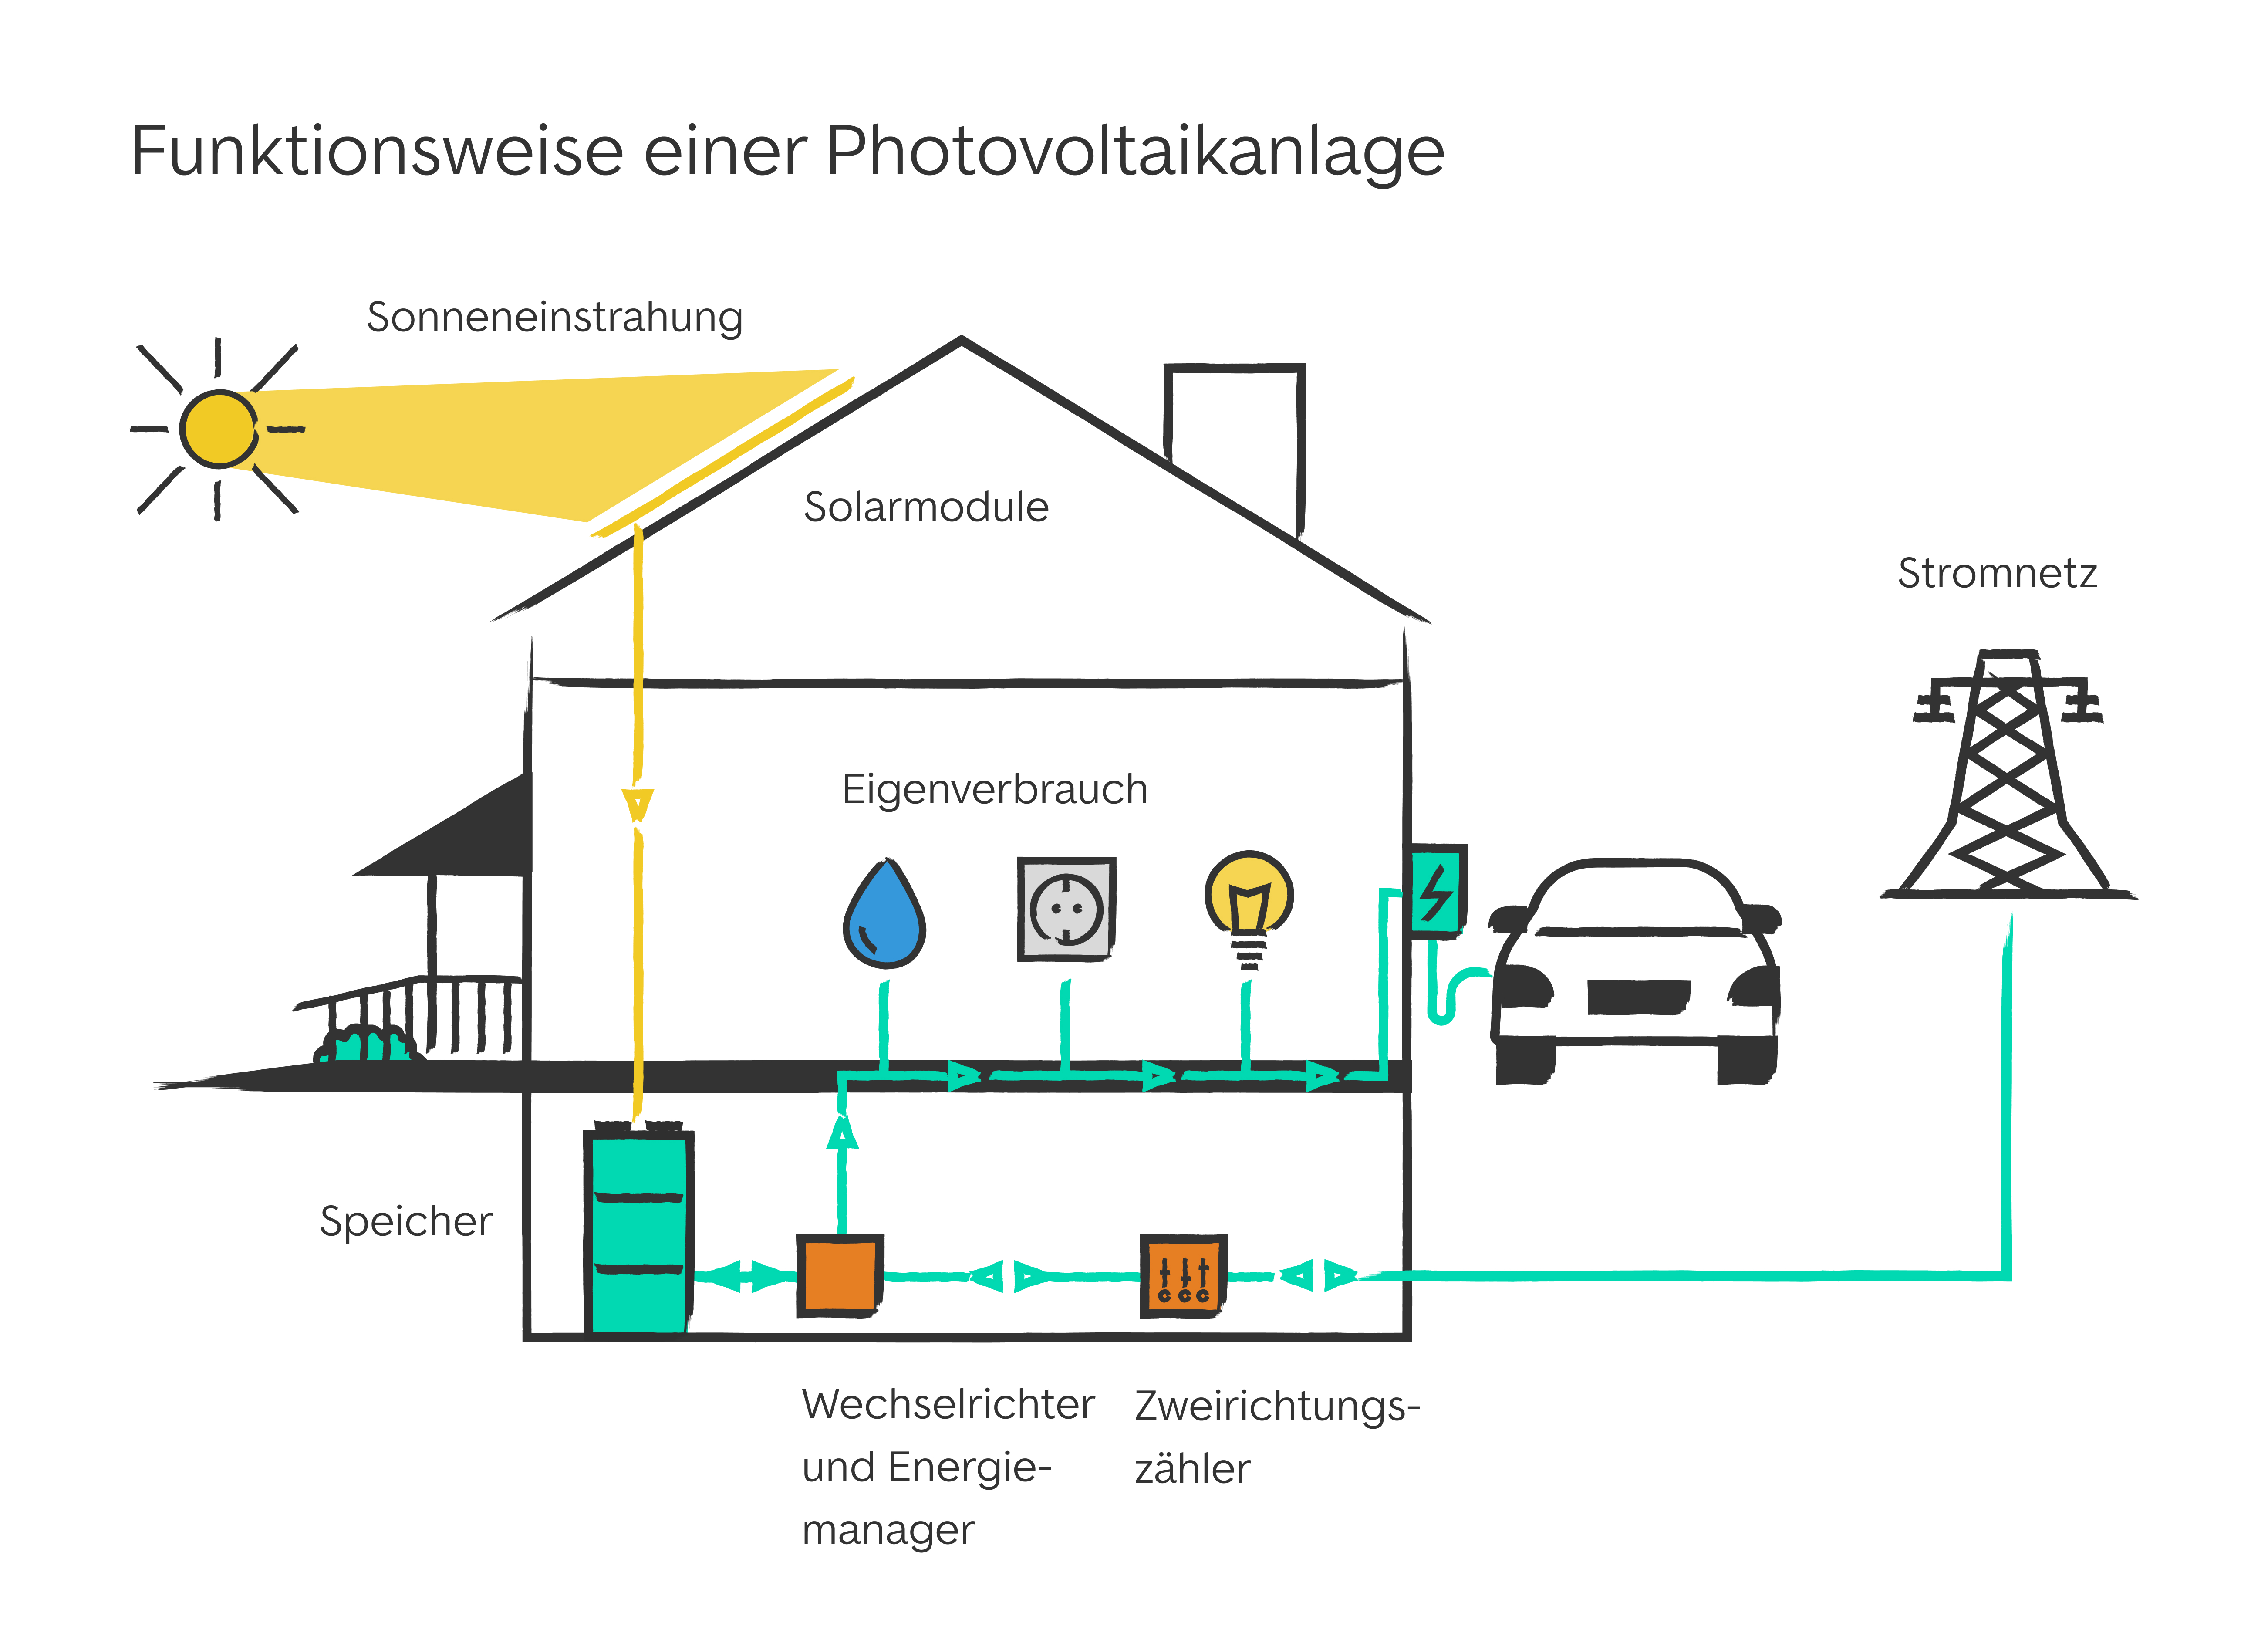 Photovoltaikanlage zur Erzeugung von Strom